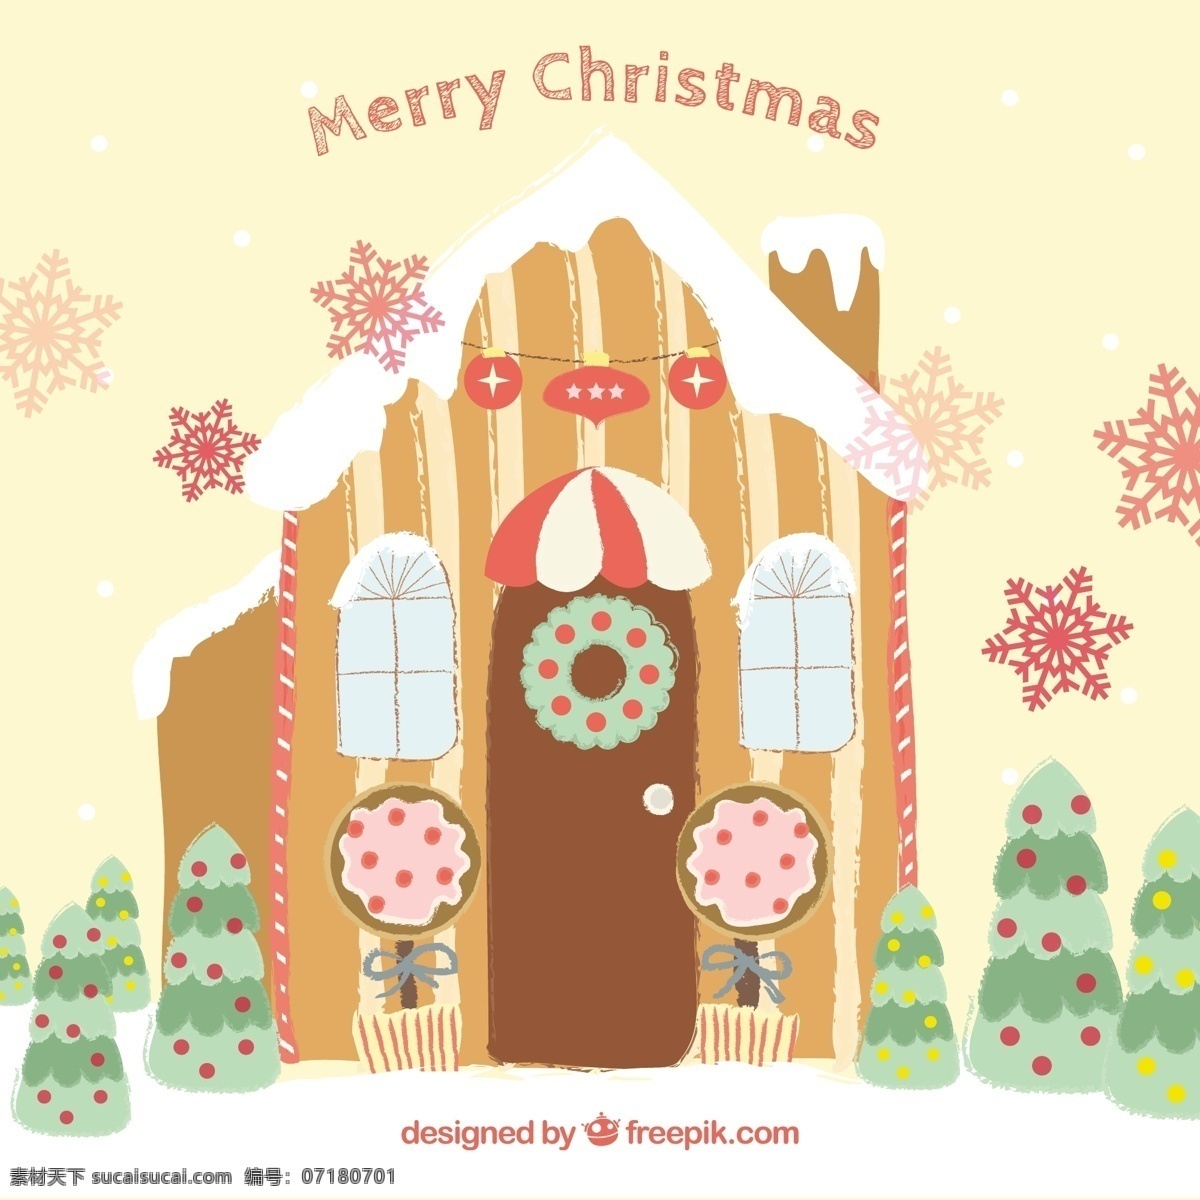 可爱 姜饼 屋 圣诞卡 圣诞节 房子 卡 新的一年 新年快乐 圣诞快乐 冬天快乐 圣诞 庆祝活动 新的节日 甜 颜色 年 节日快乐 粉彩 问候 白色